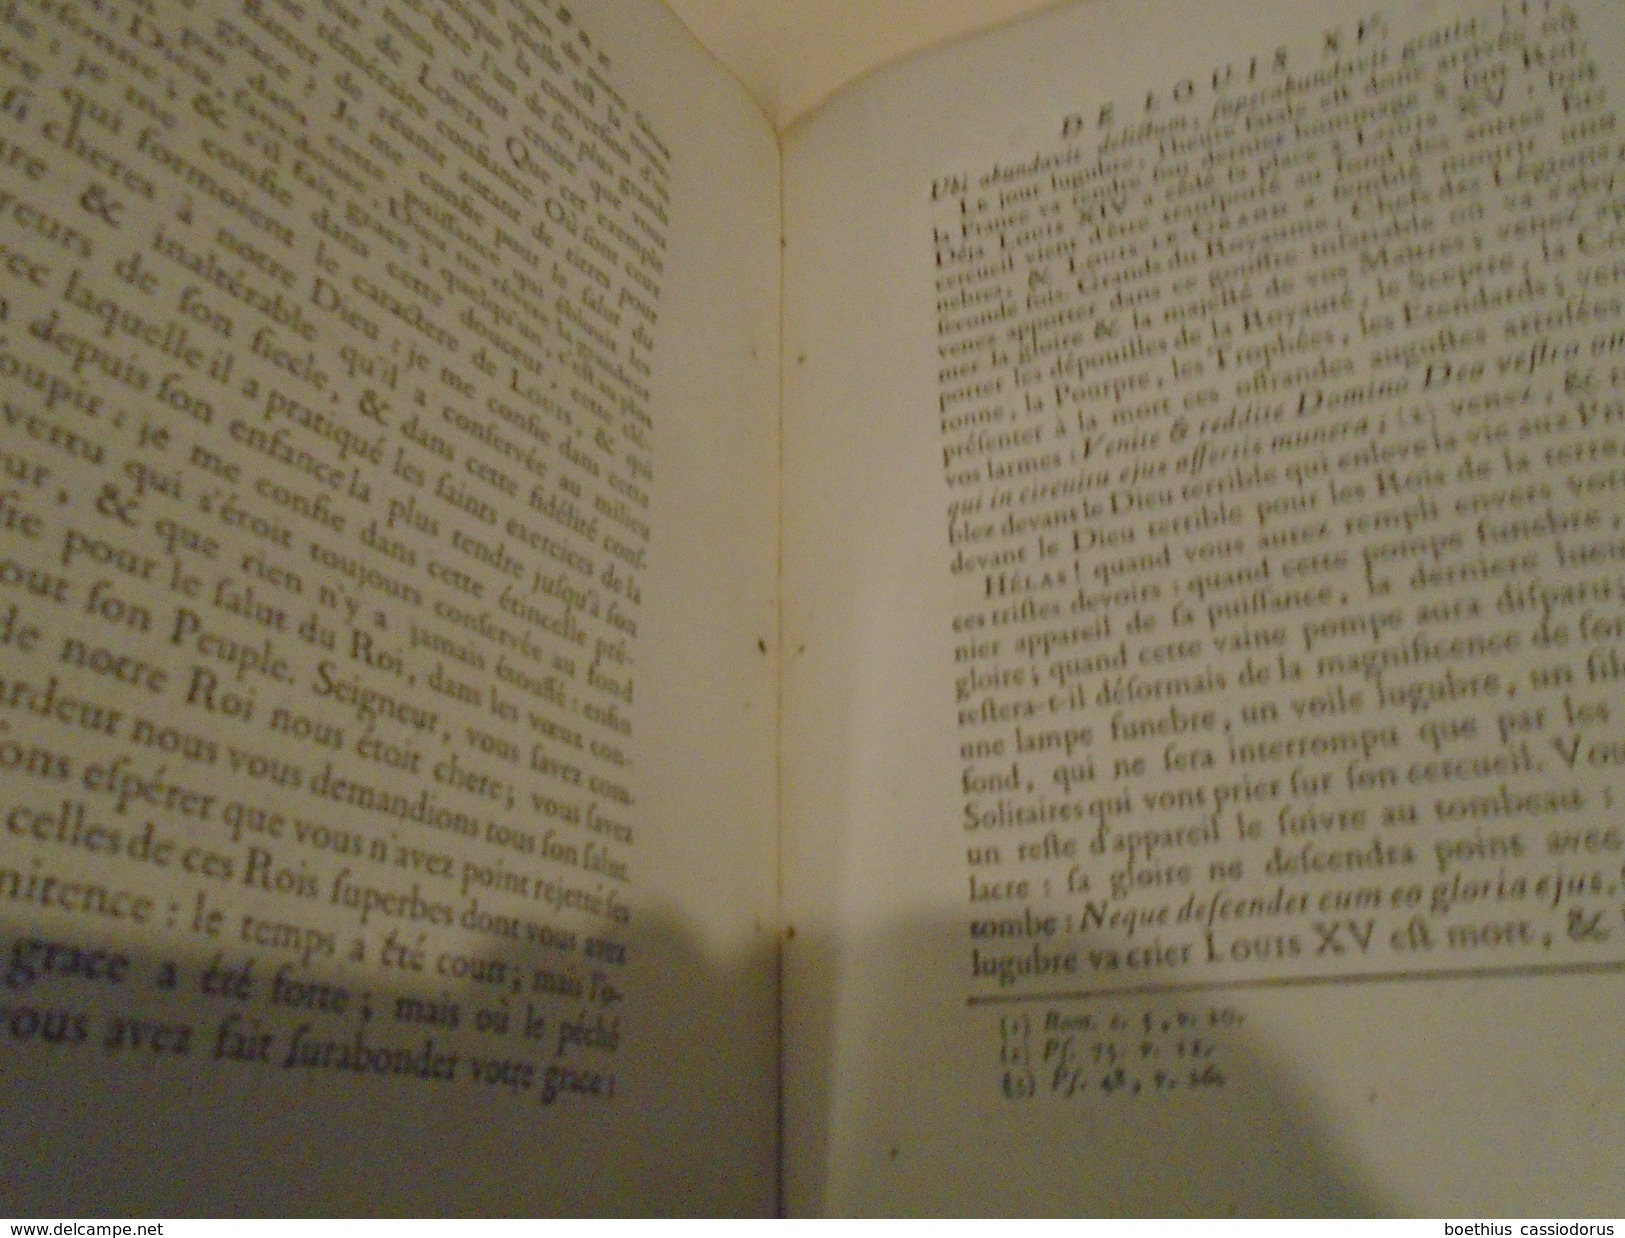 IN-4 avec 2 gravures : ORAISON FUNEBRE DE LOUIS XV 1774 (voir détail)